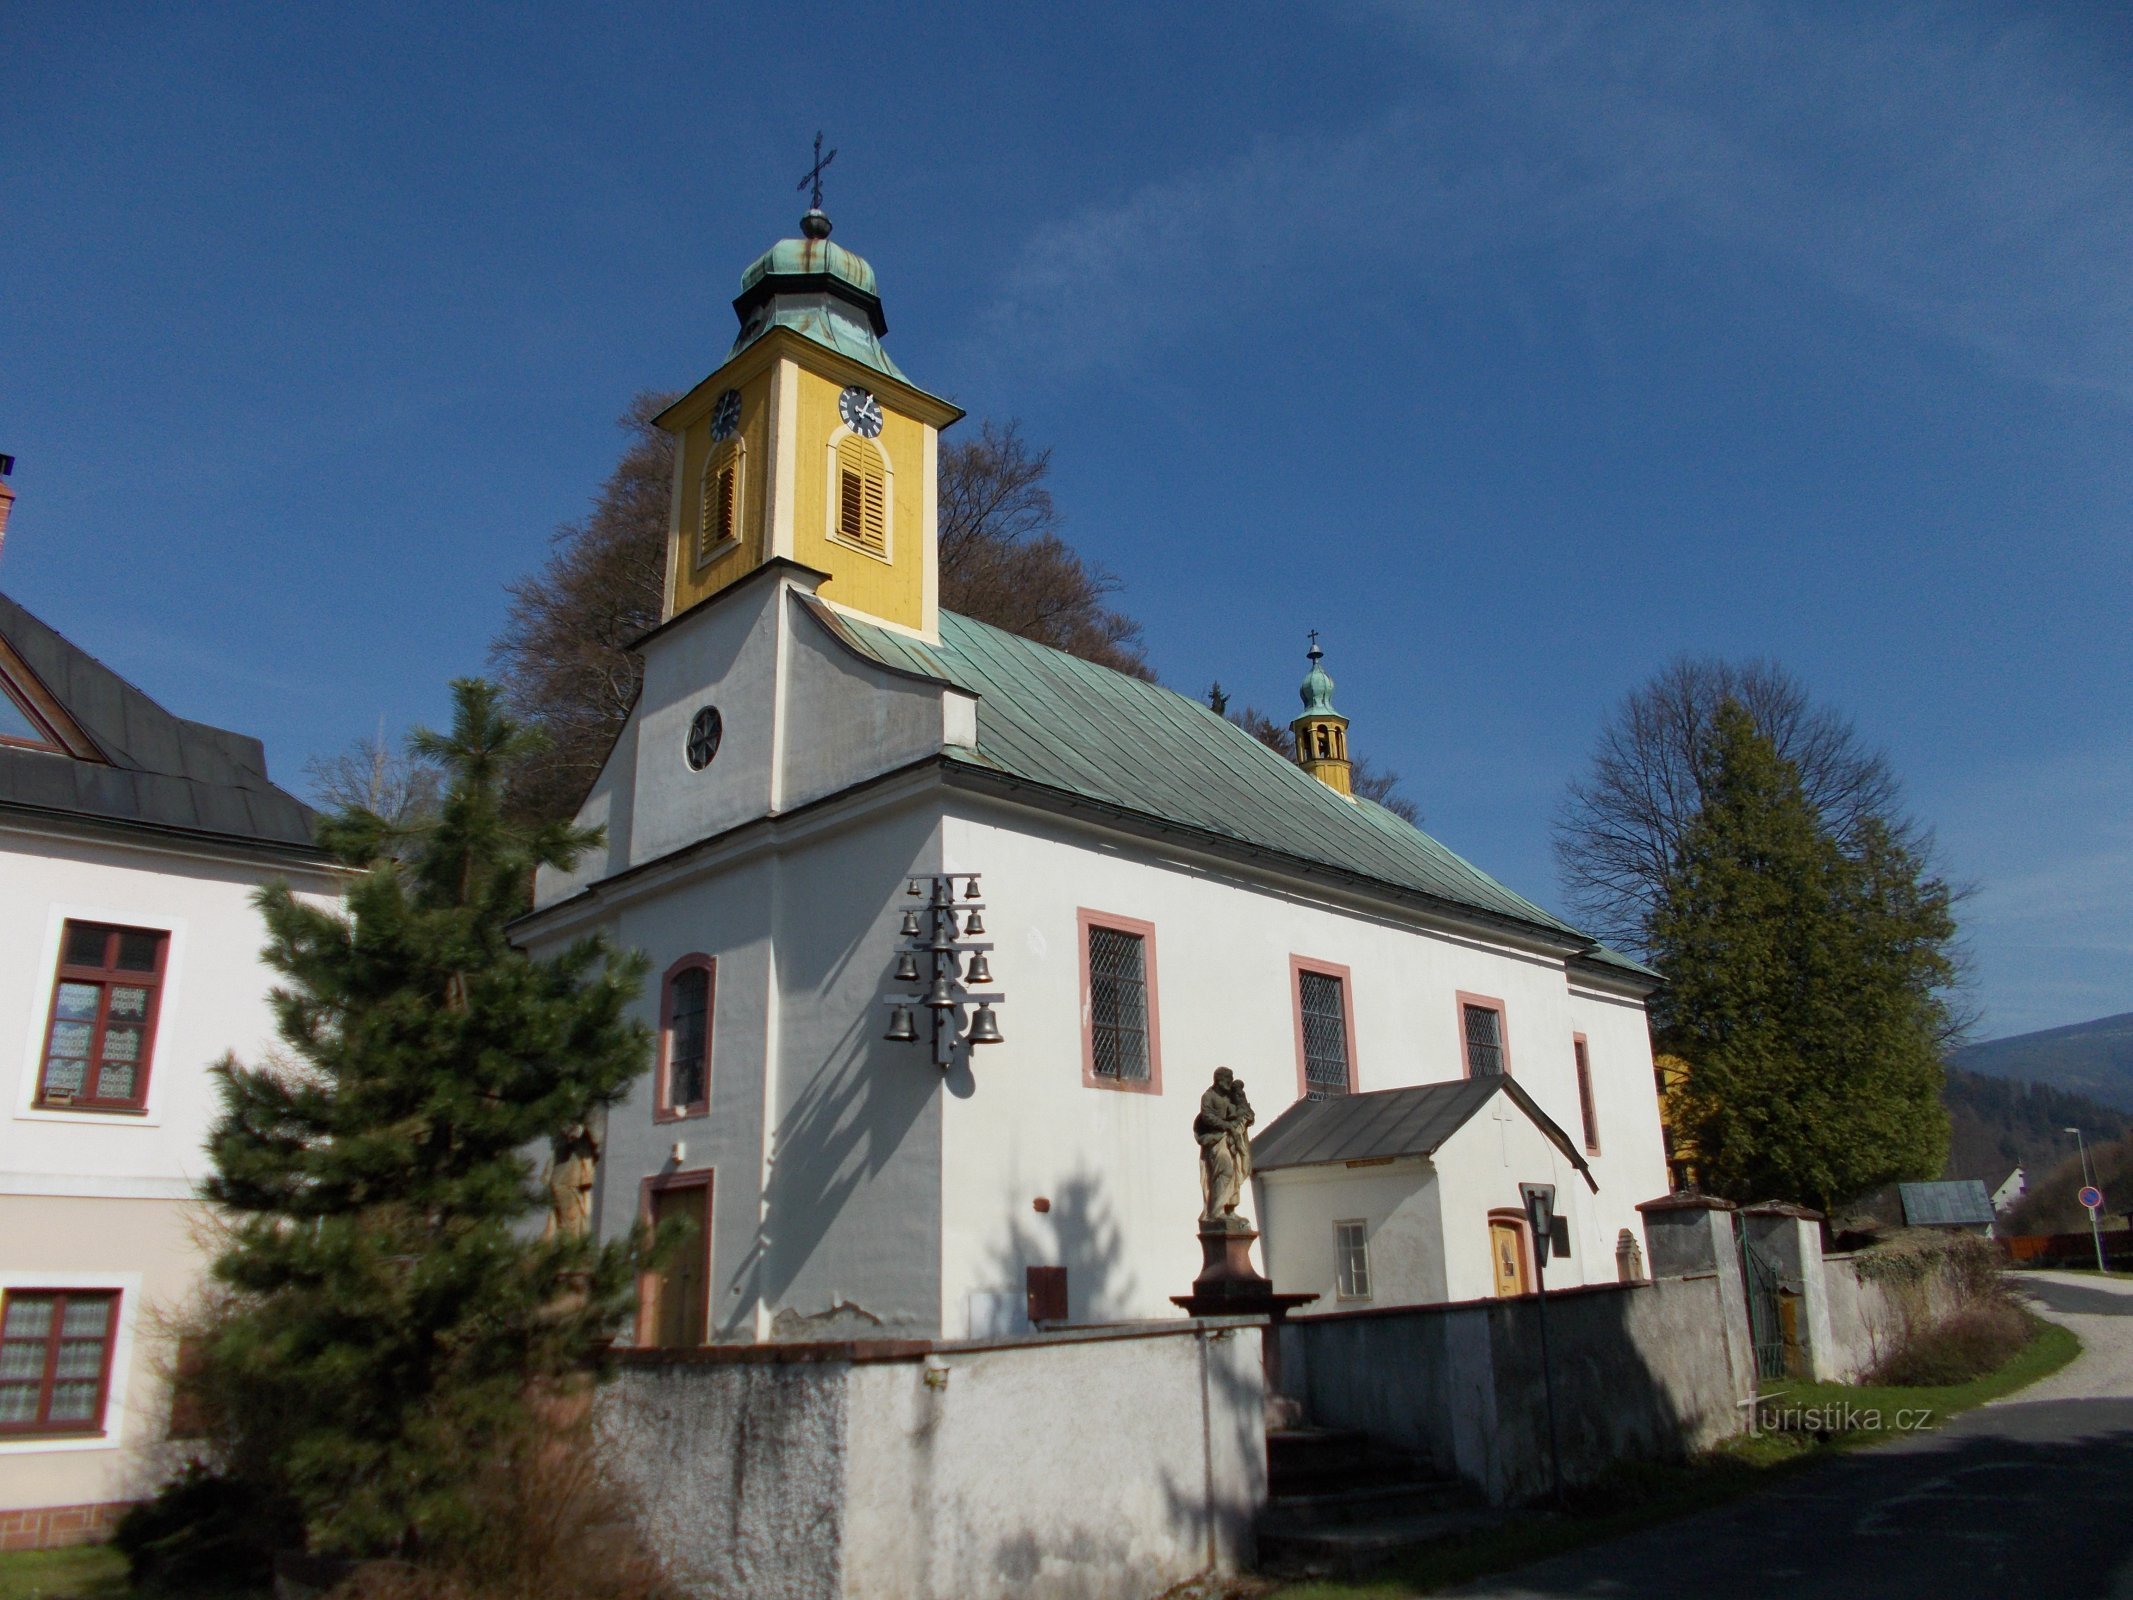 Dolní Dvůr - église de St. Joseph